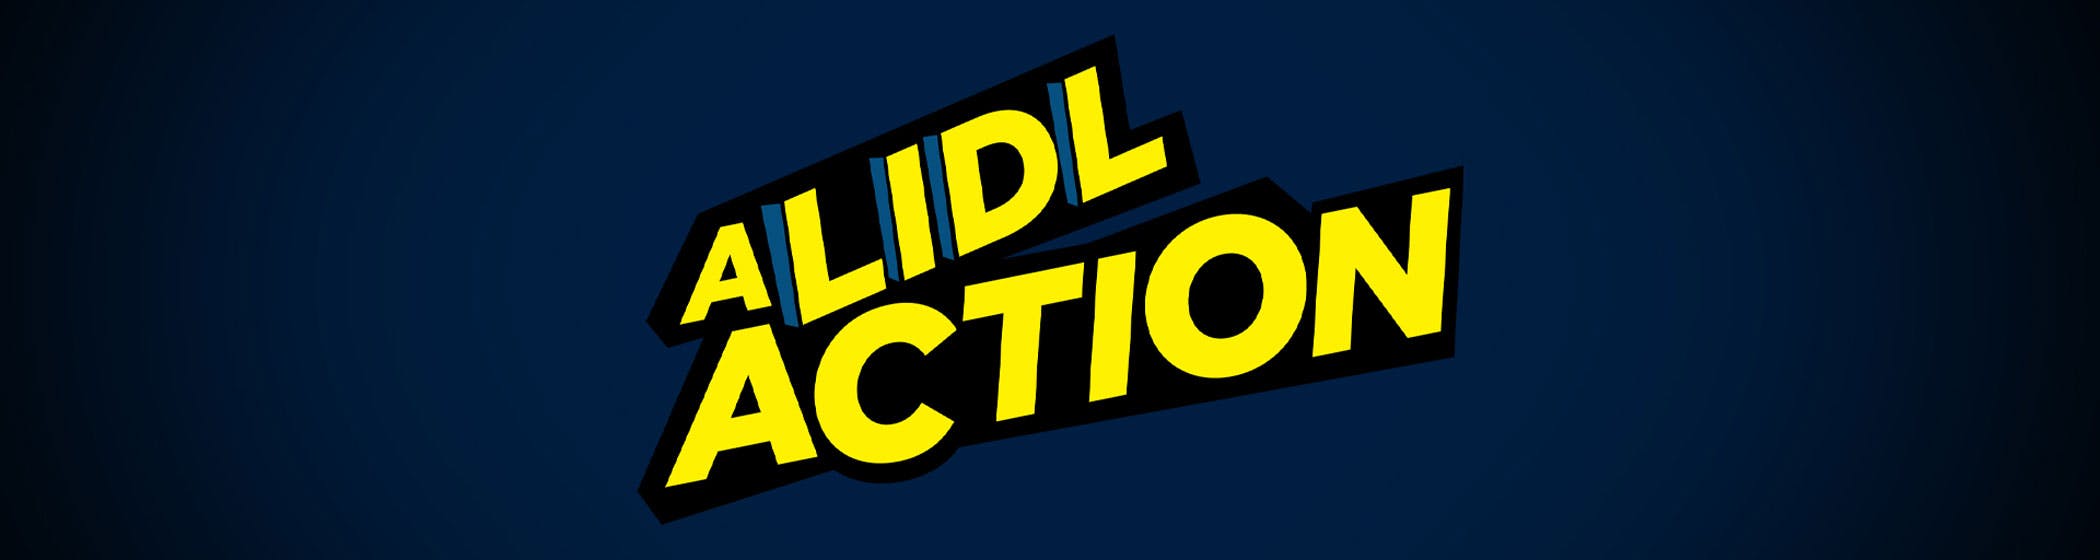 Case Lidl Suomi: A Lidl Action -rekrytointikampanjalla huikea hakijakokemus